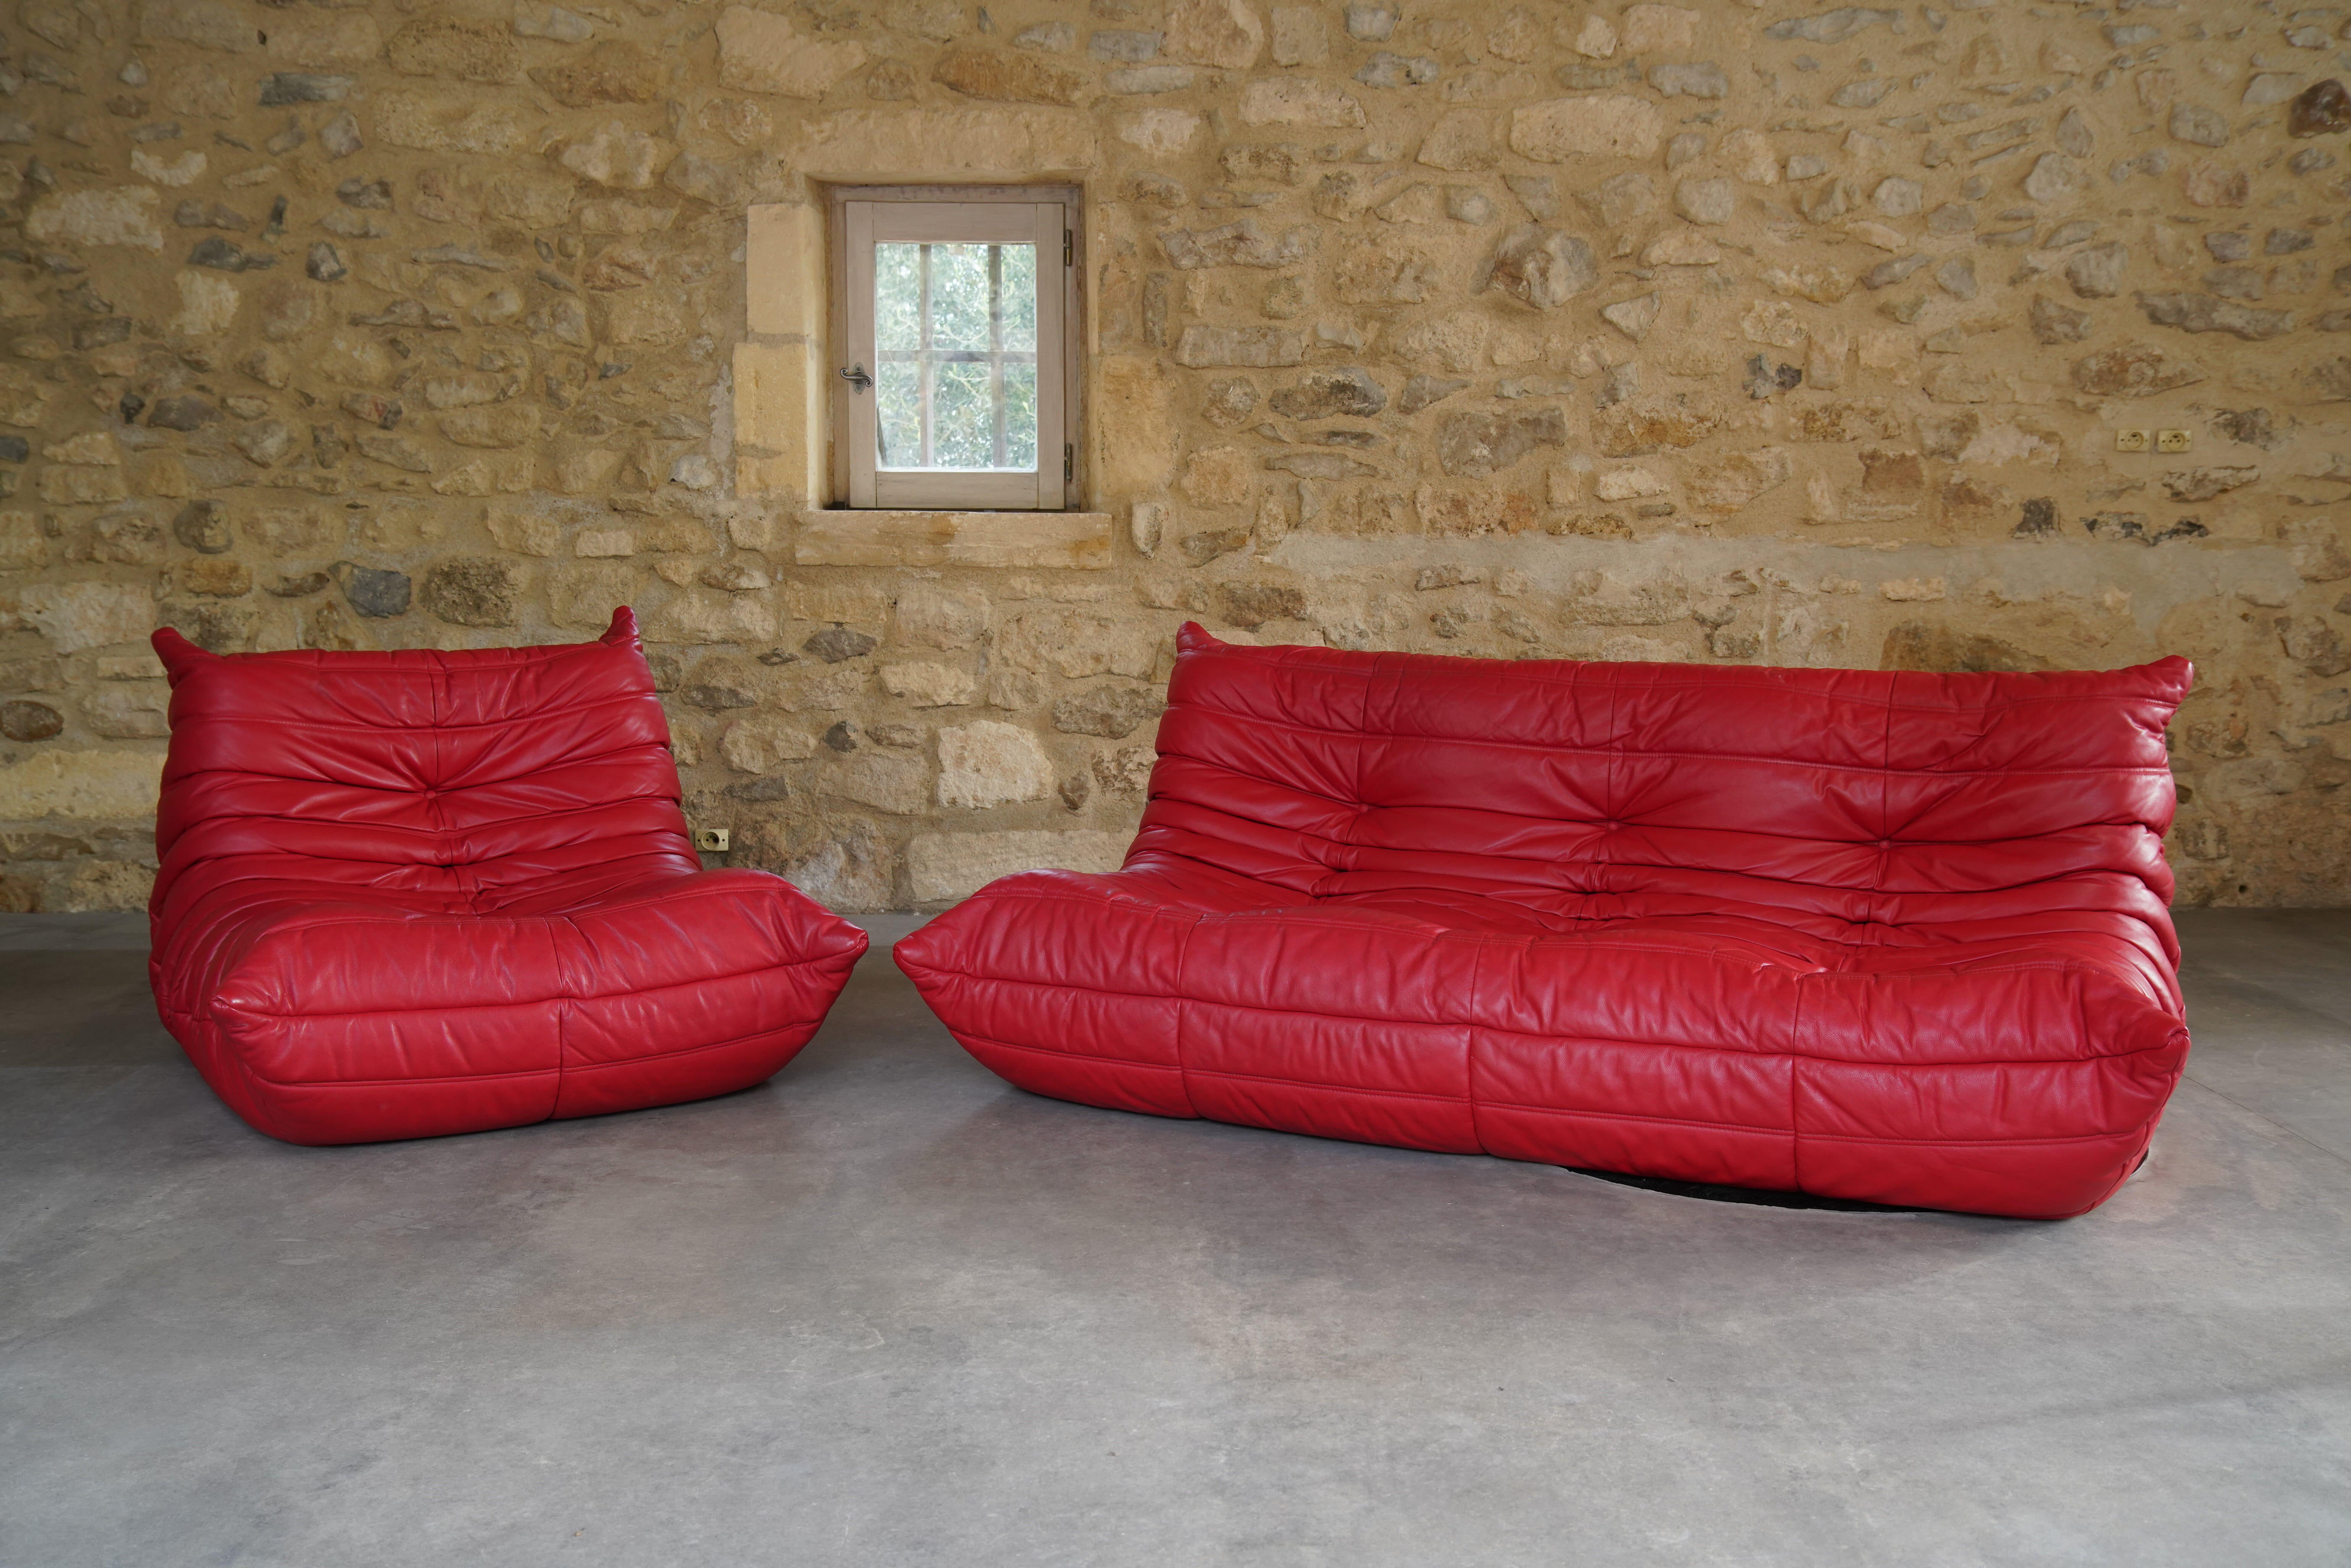 Magnifique canapé et chaise Togo à trois places en cuir rouge, conçus par Michel Ducaroy pour Ligne Roset en 2007.

Le designer Michel Ducaroy s'est inspiré d'un tube de dentifrice en aluminium pour concevoir le Togo, remarquant qu'il 